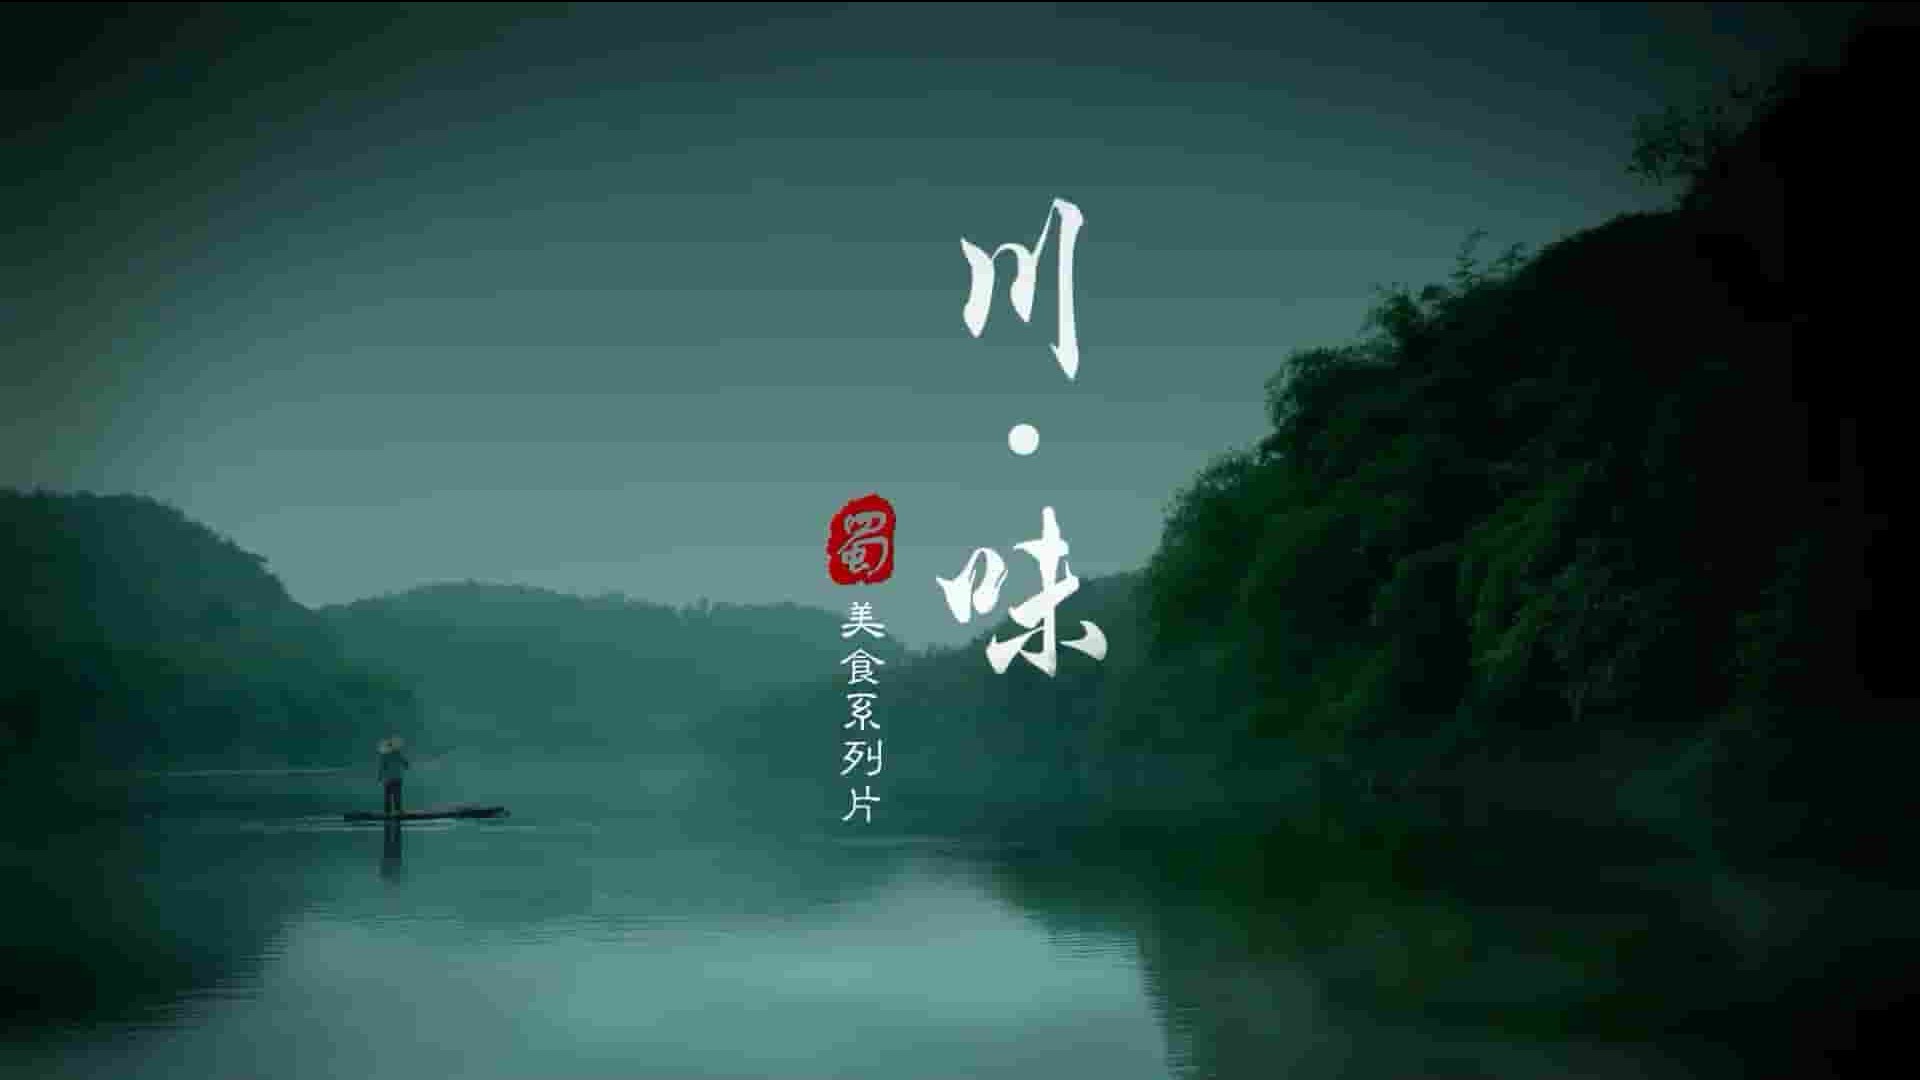 国产纪录片《川味传奇 The second season of Sichuan flavor》全3季共33集 国语中字 1080P高清网盘下载